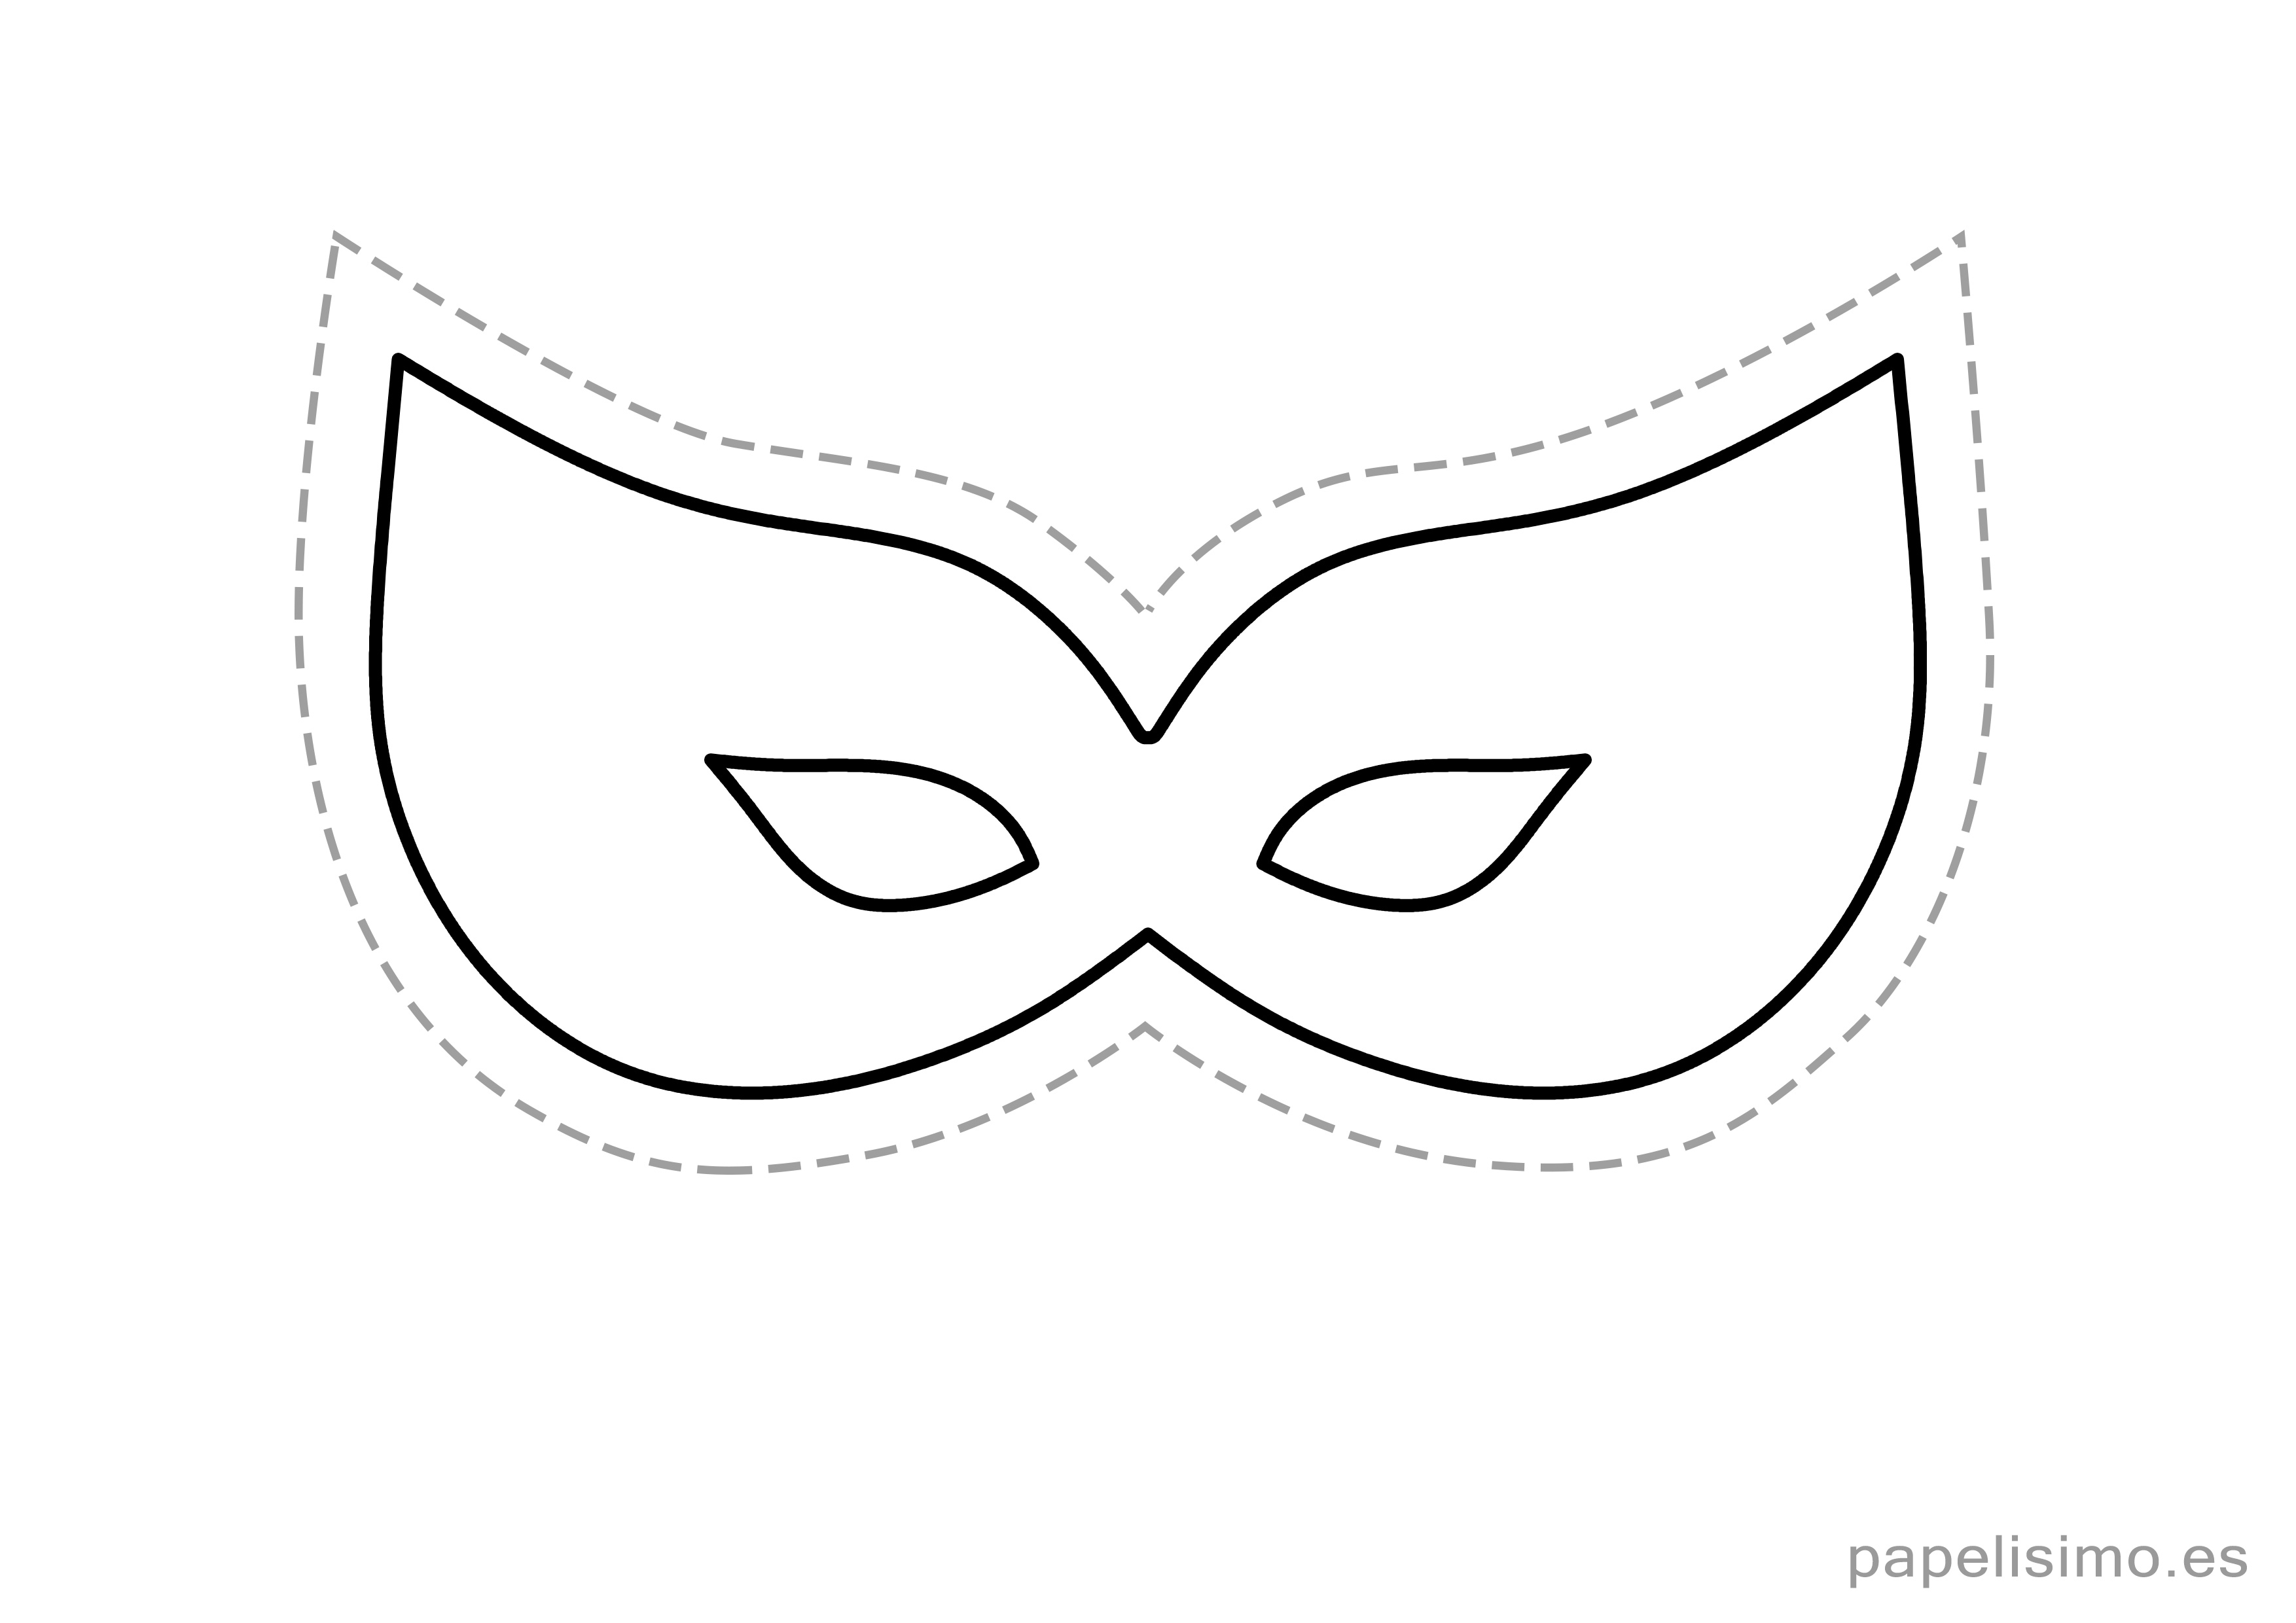 chasquido bahía Cuatro 9 máscaras de goma eva para imprimir y recortar | Papelisimo